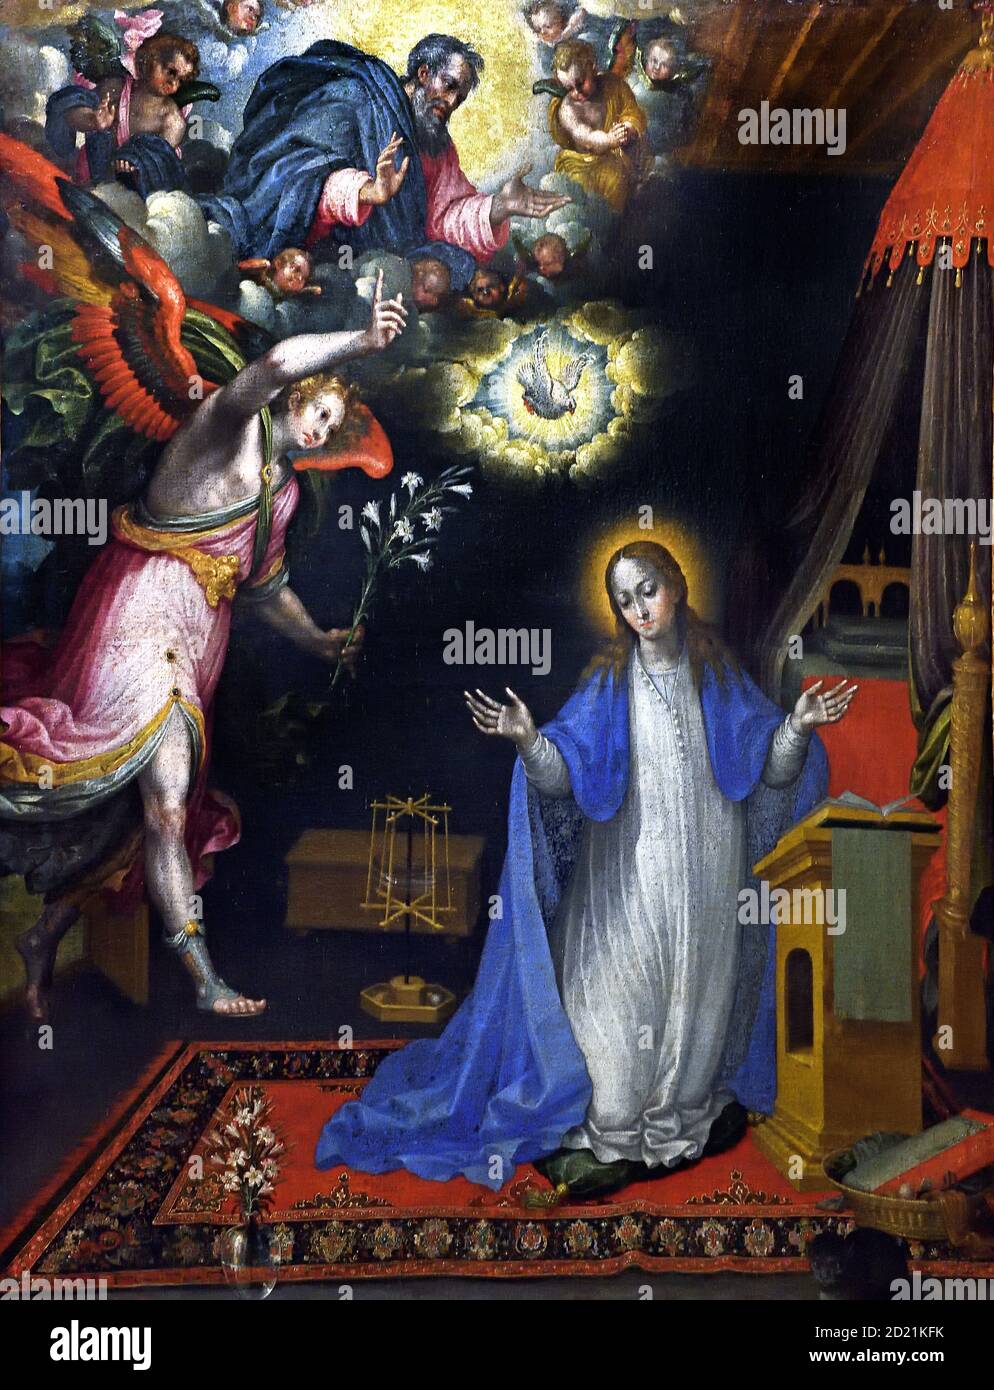 Die Verkündigung 1609-1643 López de Herrera, Alonso Maria, die in der Mitte eines Raumes kniet, erhält die Nachricht, dass sie ein Kind gebären wird, das sie Jesus nennen wird. Der Träger der guten Nachricht ist der Erzengel St. Gabriel. Spanien, Spanisch, Stockfoto